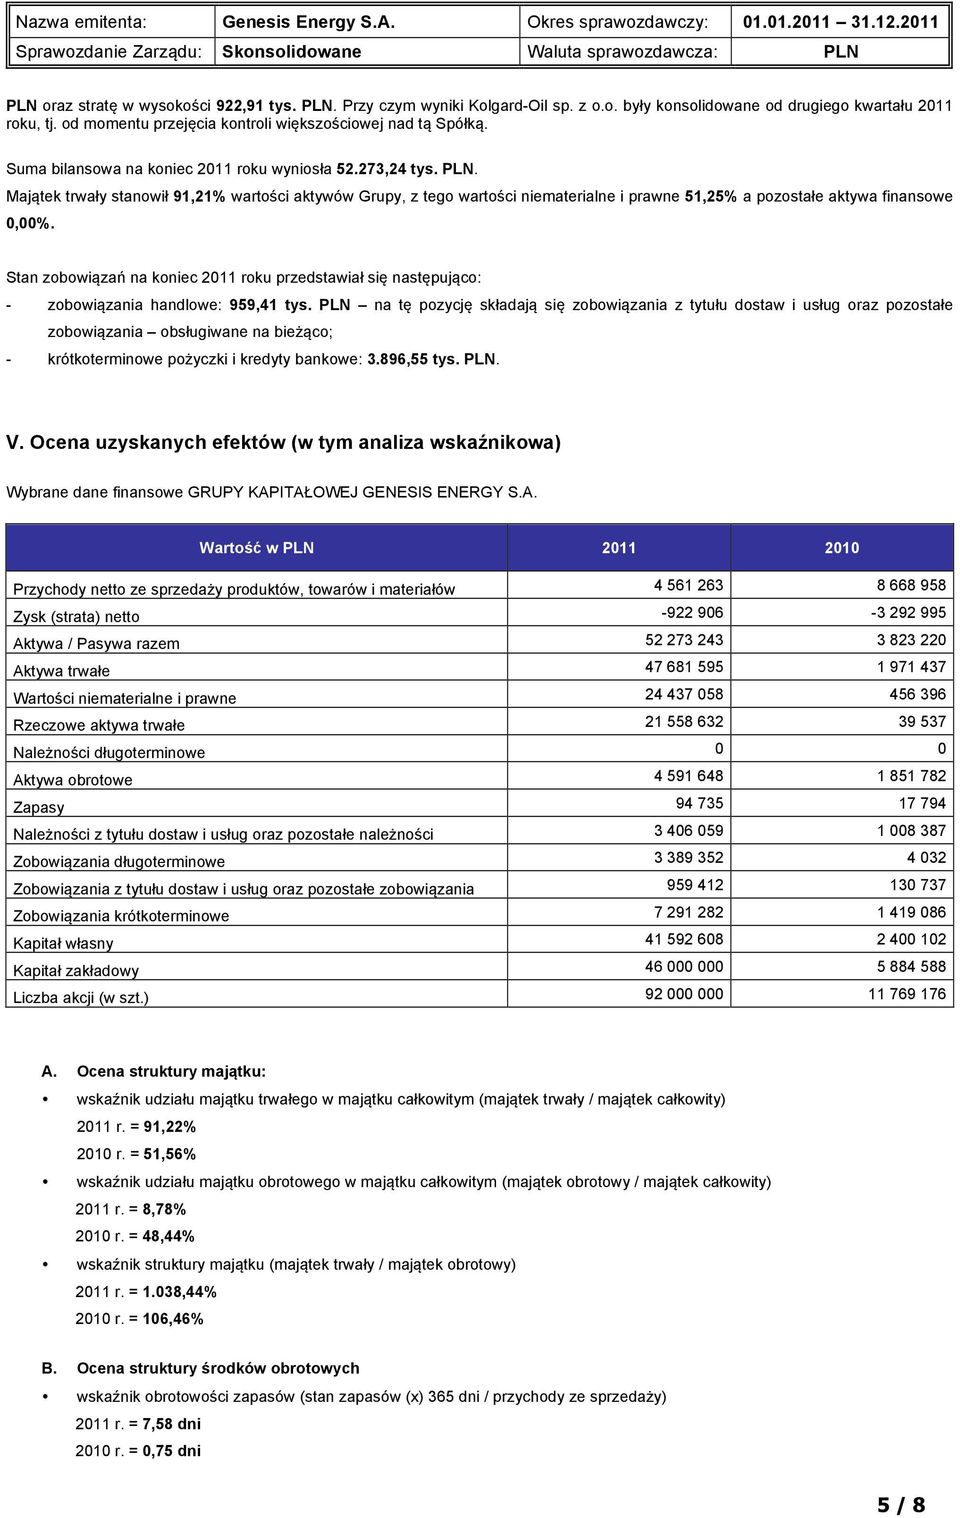 Stan zobowiązań na koniec 2011 roku przedstawiał się następująco: - zobowiązania handlowe: 959,41 tys.